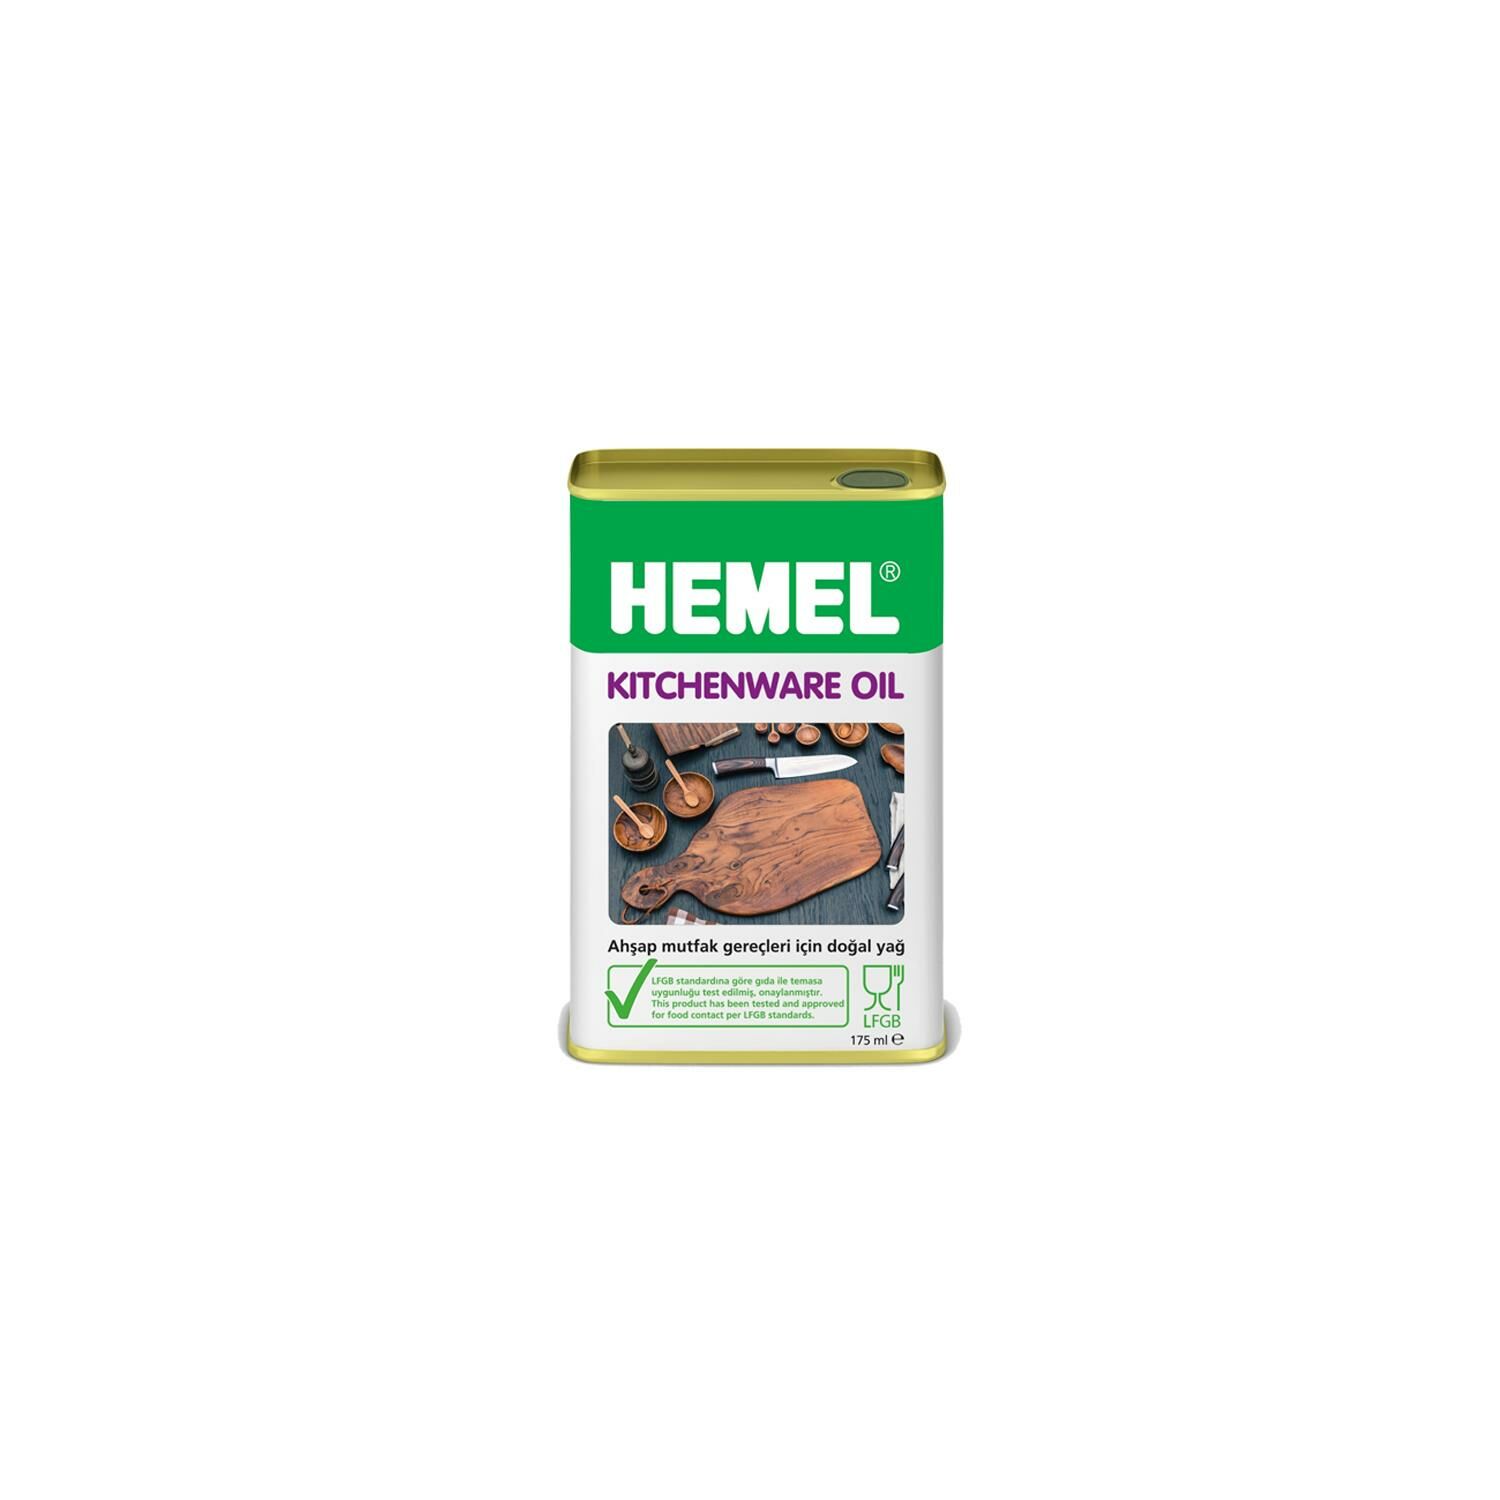 HEMEL Kitchenware Oil - Mutfak Gereçleri İçin Doğal Yağ 0,175 LT